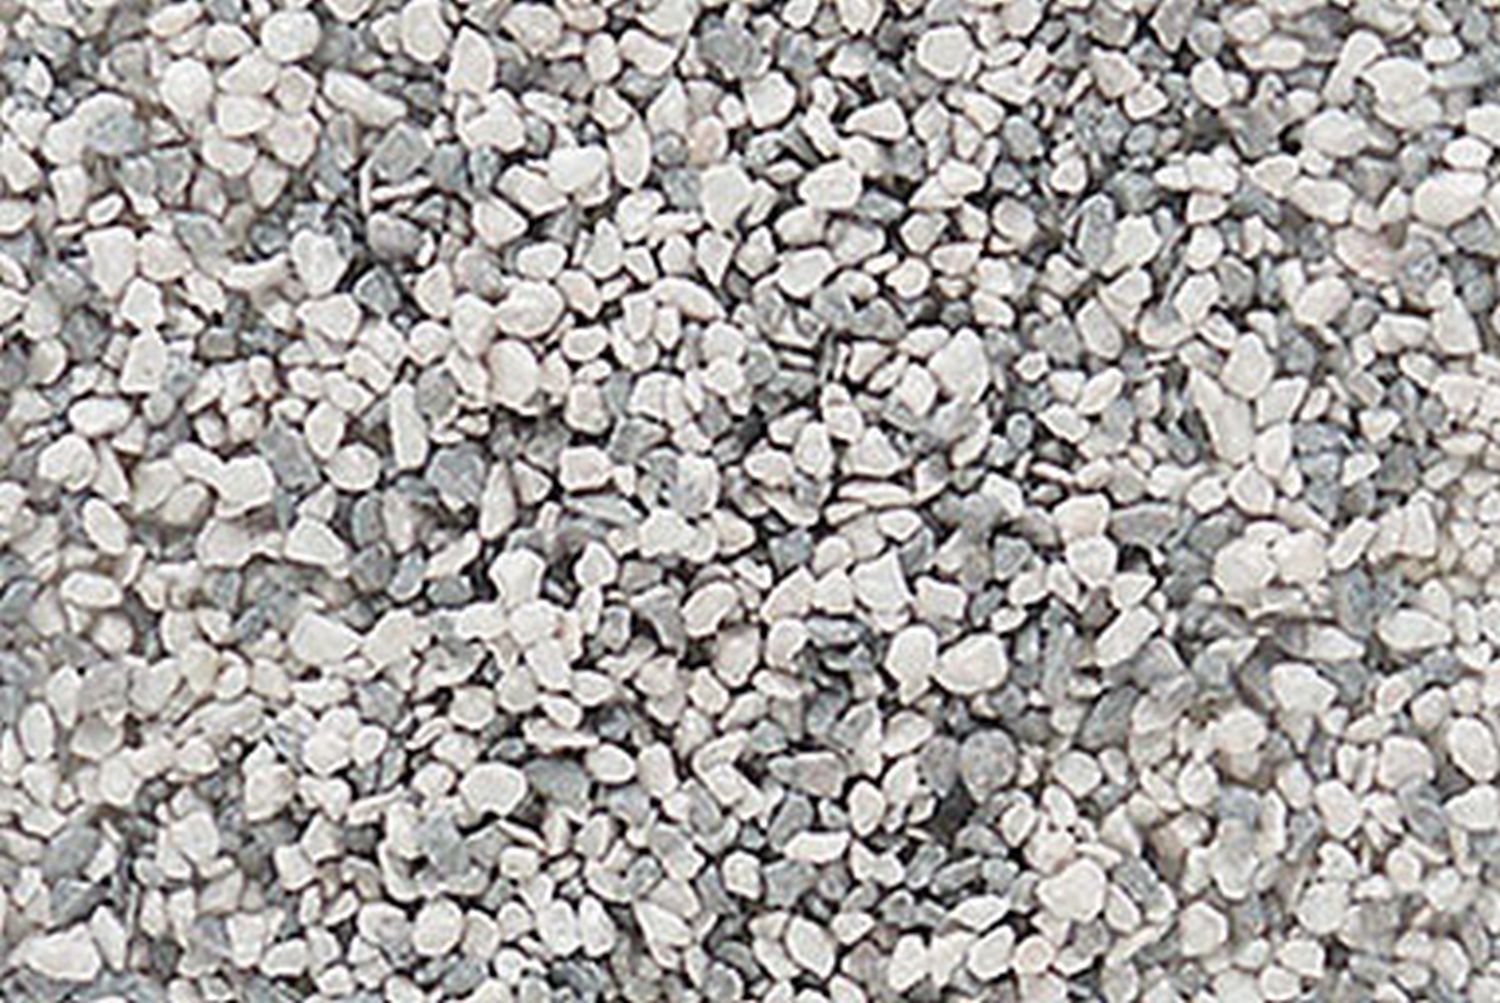 Woodland WB94 - Schotter, grau gemischt, mittel, 420g